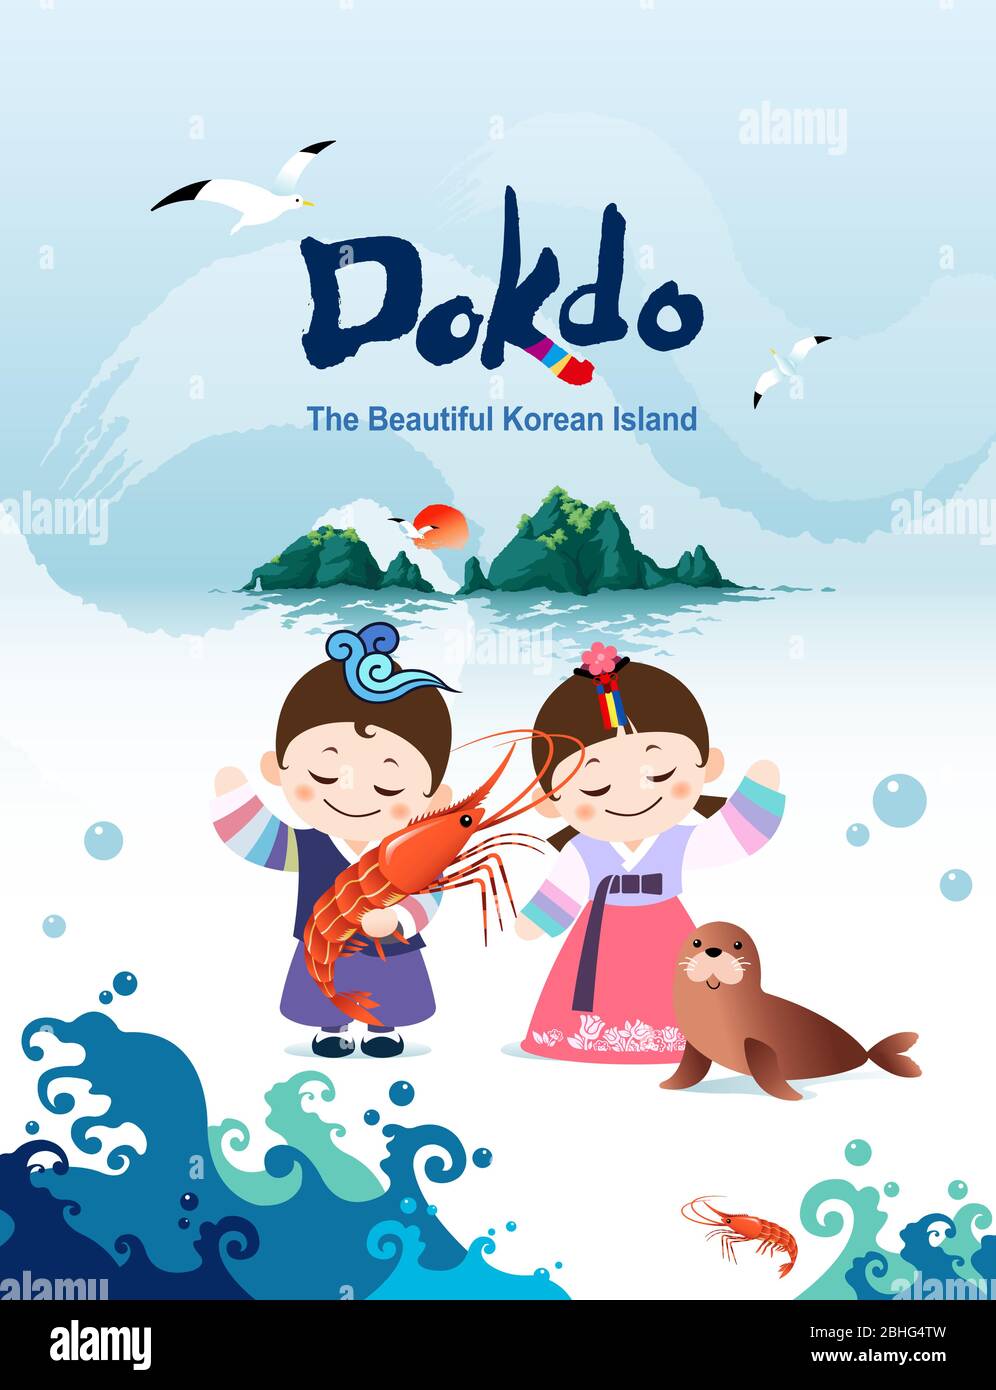 Wunderschöne koreanische Insel, Dokdo's Shrimps und Robben. Koreanische traditionelle hanbok Kinder paar Zeichen sind willkommen, Korea zu besuchen. Stock Vektor